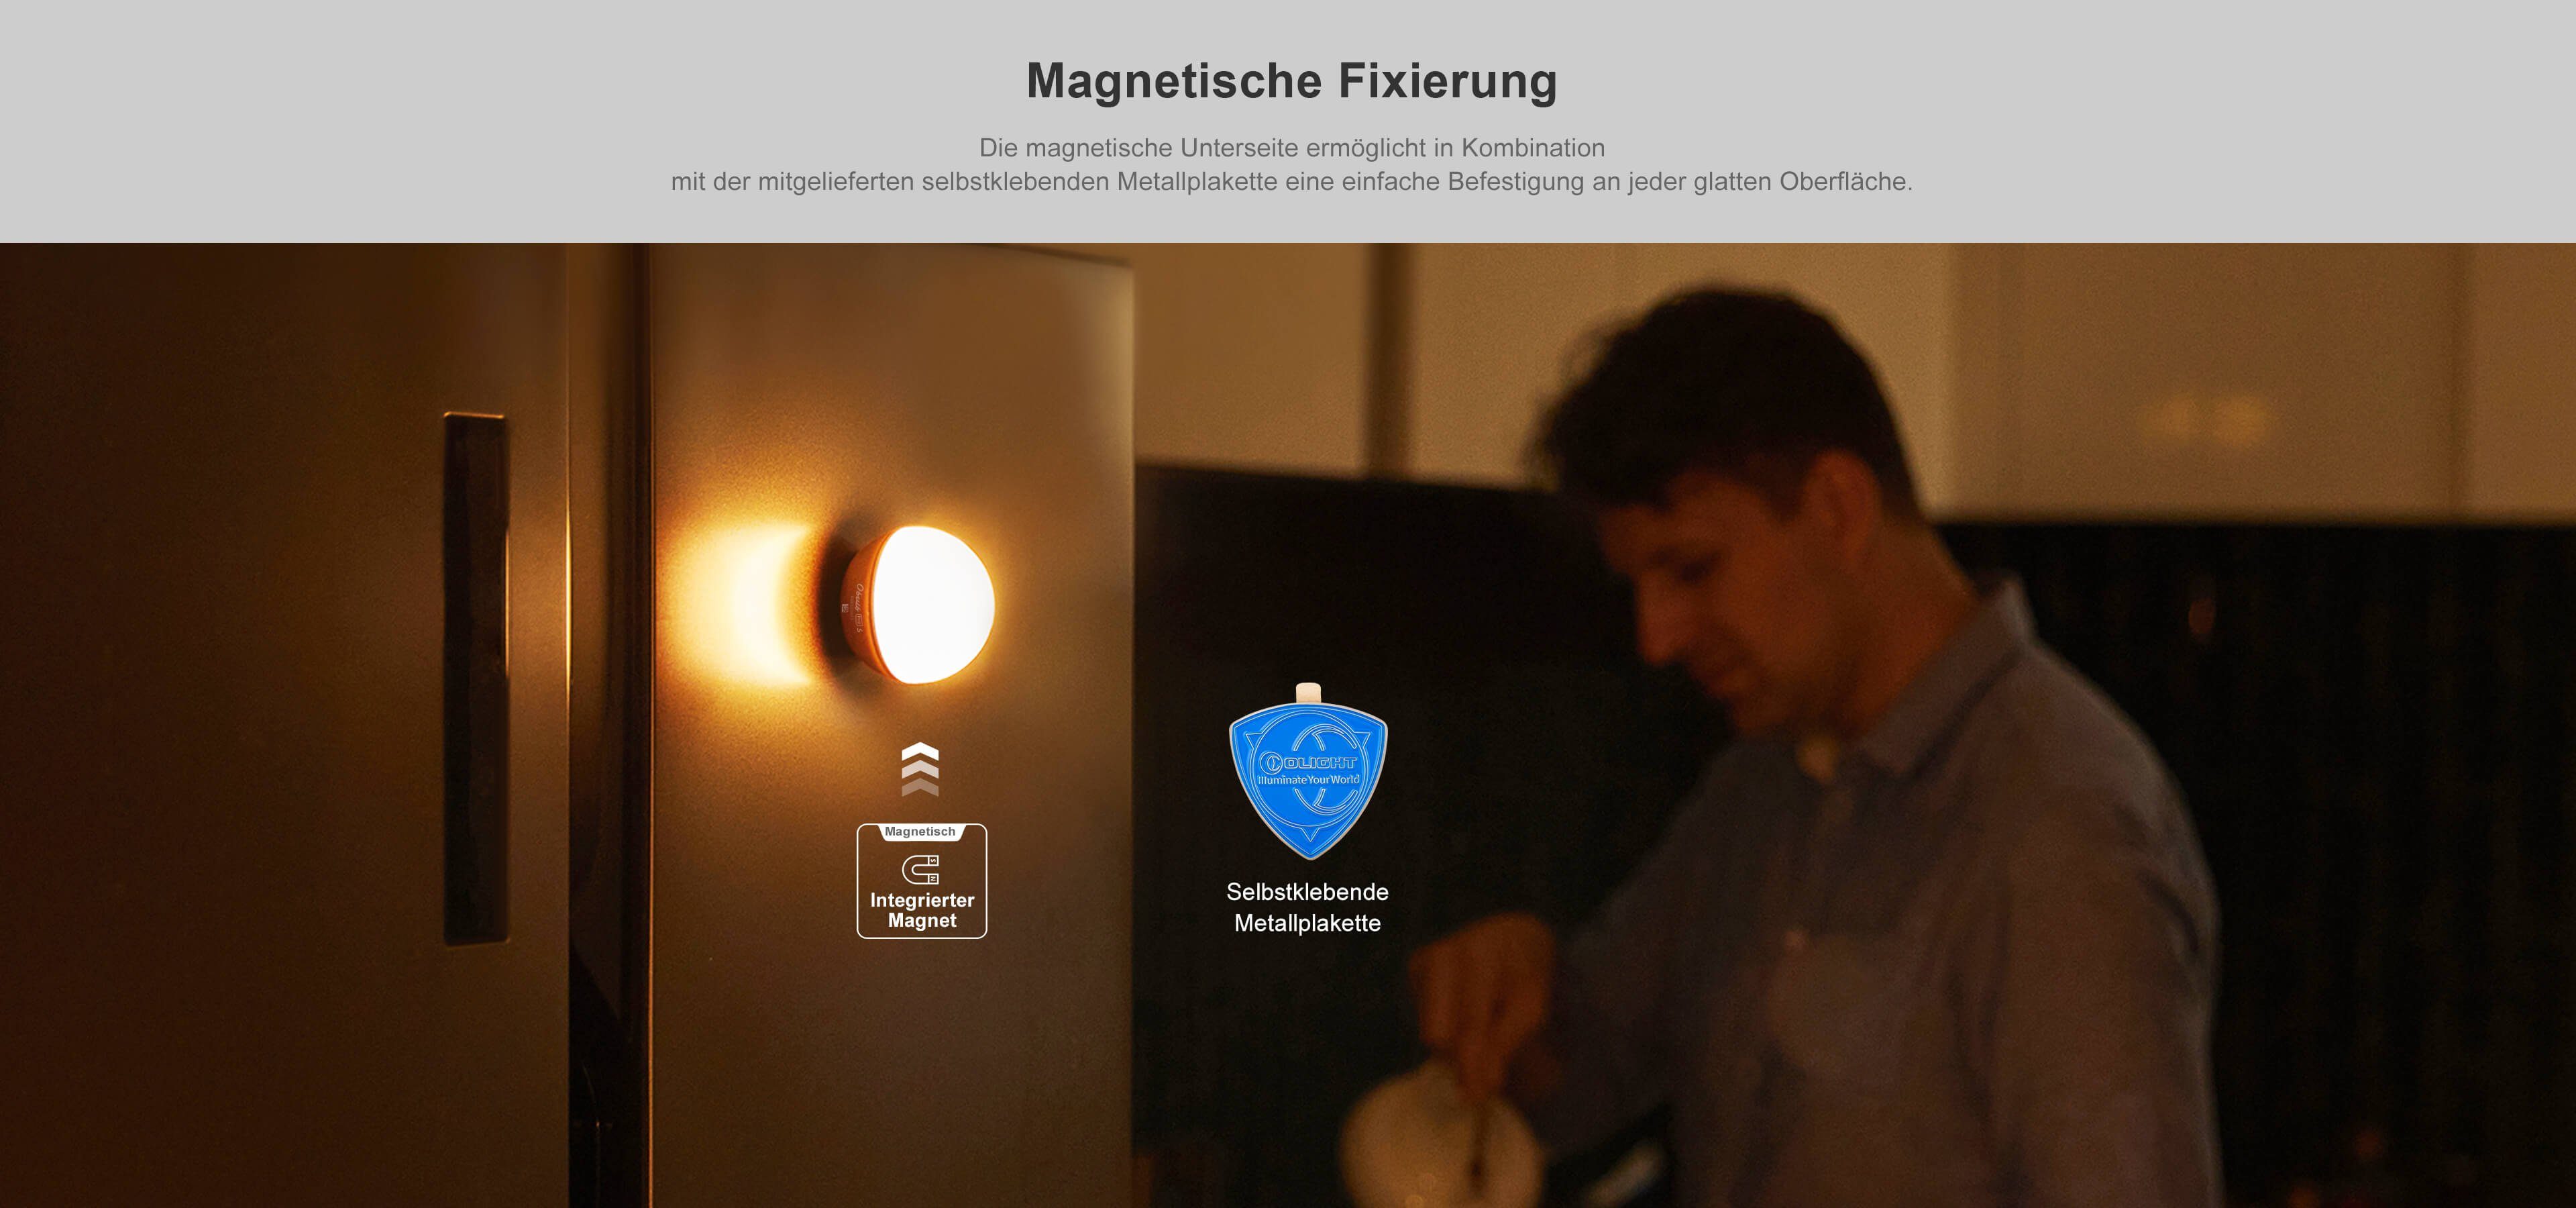 Nachtlicht Orange App-Steuerung Lichtkugel Farbenfrohe S und mit Dynamische OLIGHT Obulb Pro